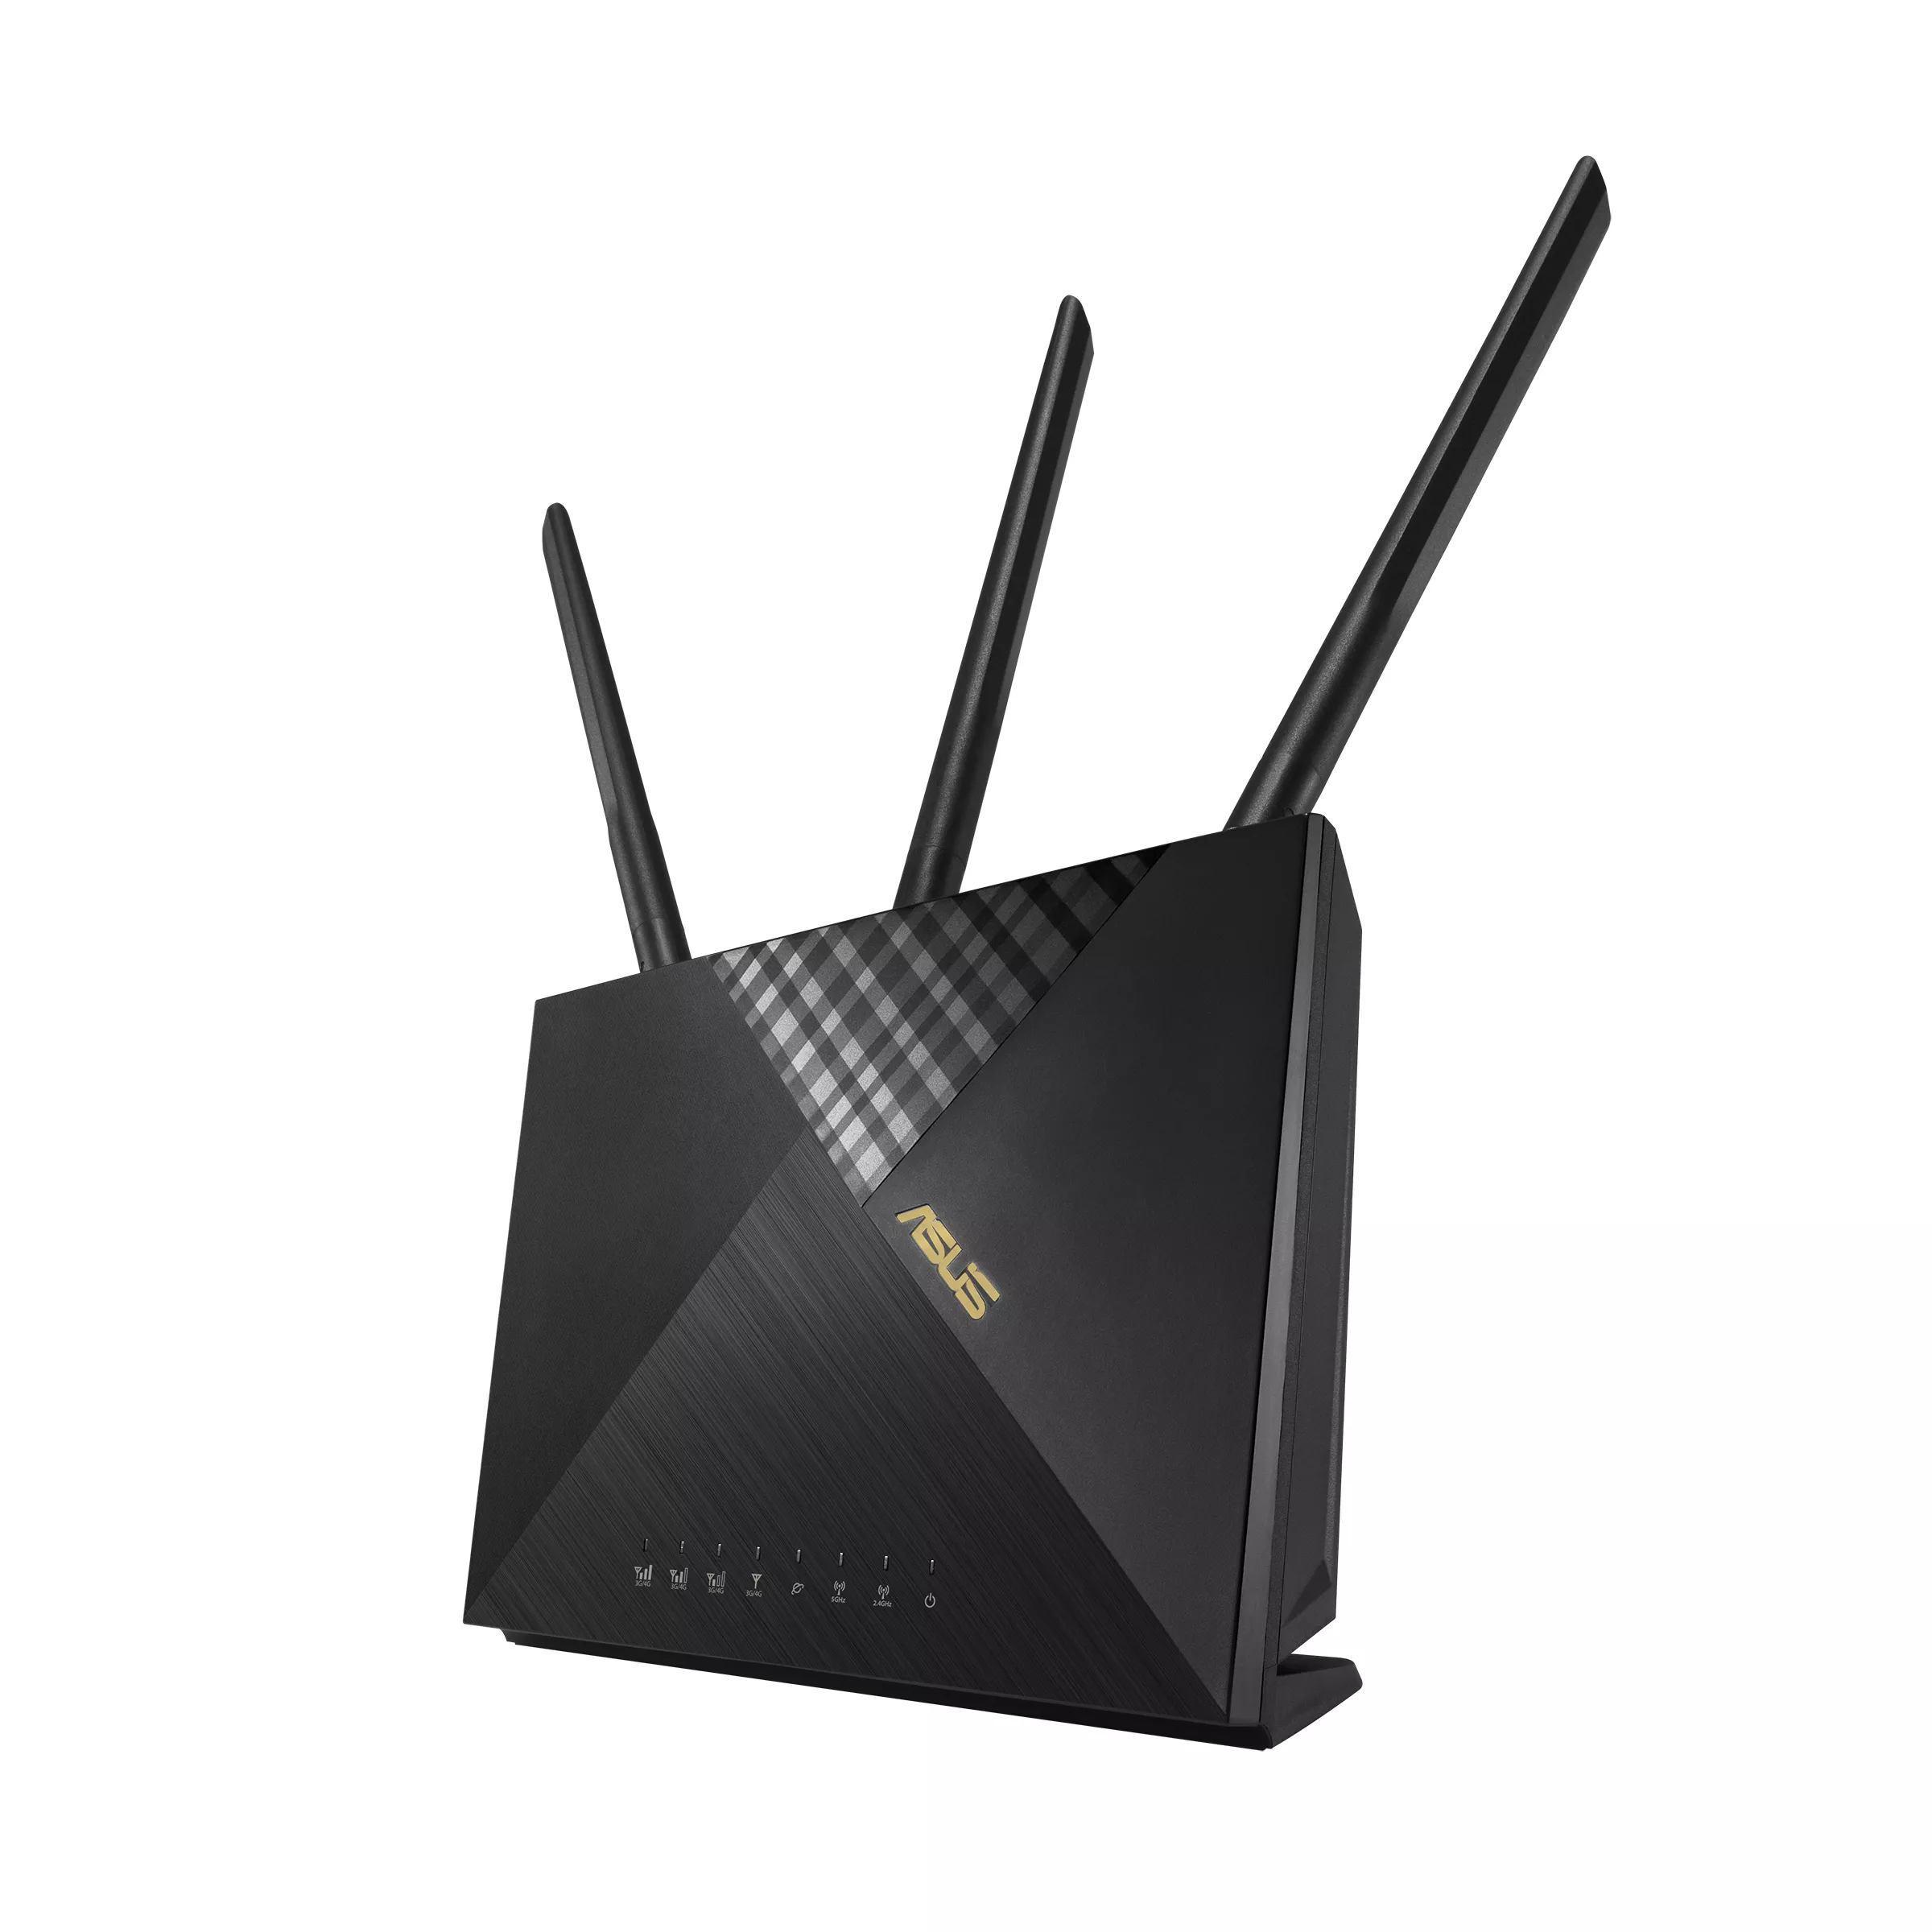 Vente Routeur ASUS Wireless-AX1800 Dual-band LTE Modem Router sur hello RSE